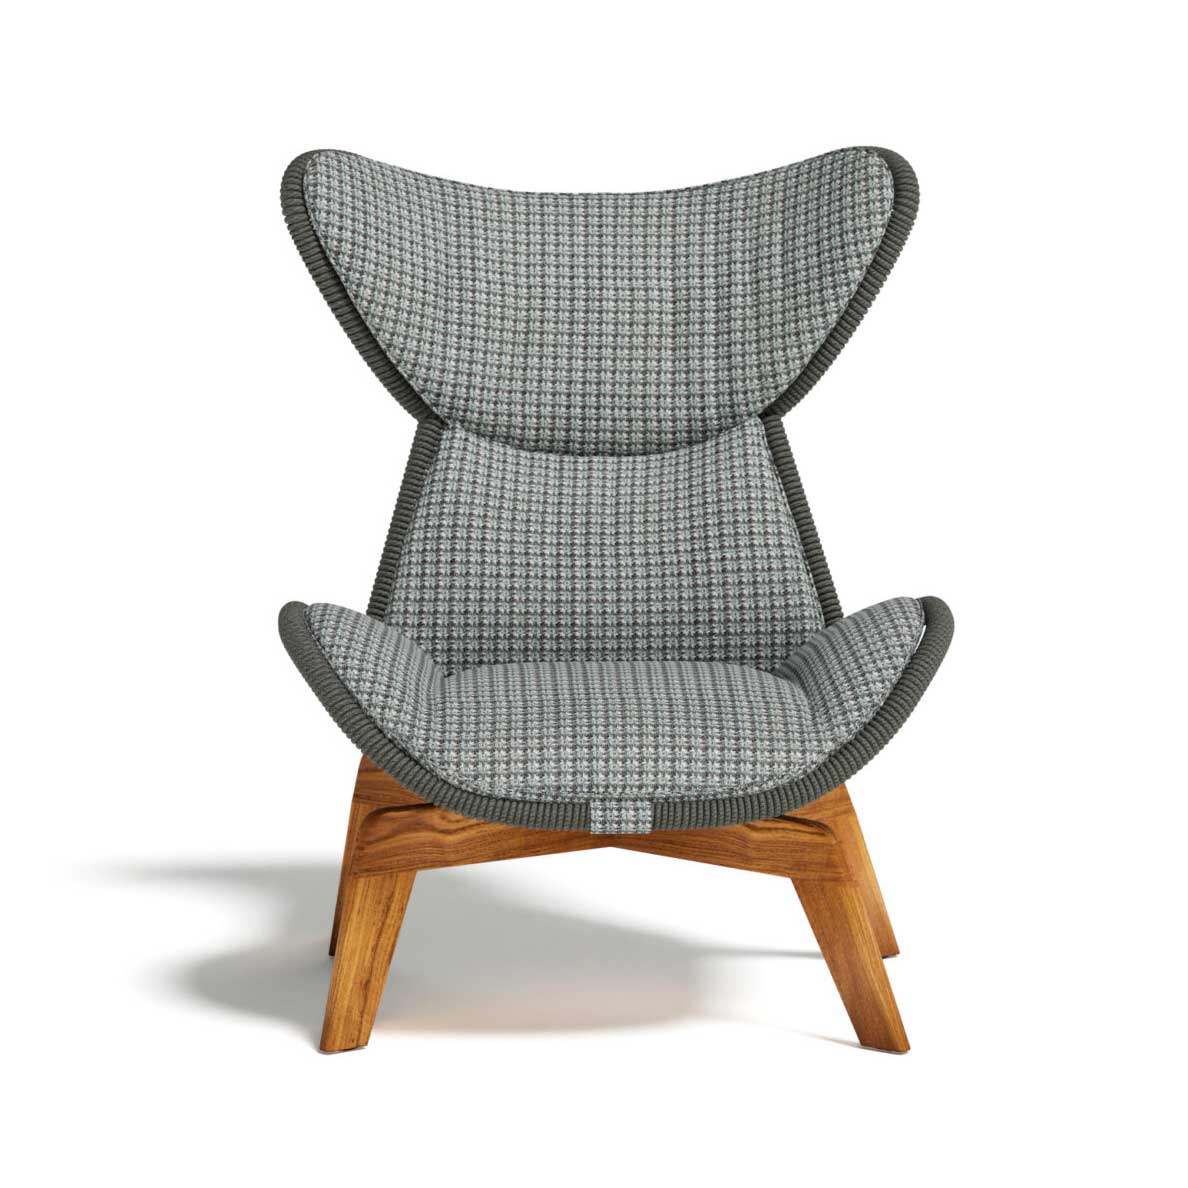 Élégance digne d'un article d'intérieur, ce fauteuil lounge a base en teck et structure tubulaire avec cordes et coussins rembourrés. Livraison gratuite.